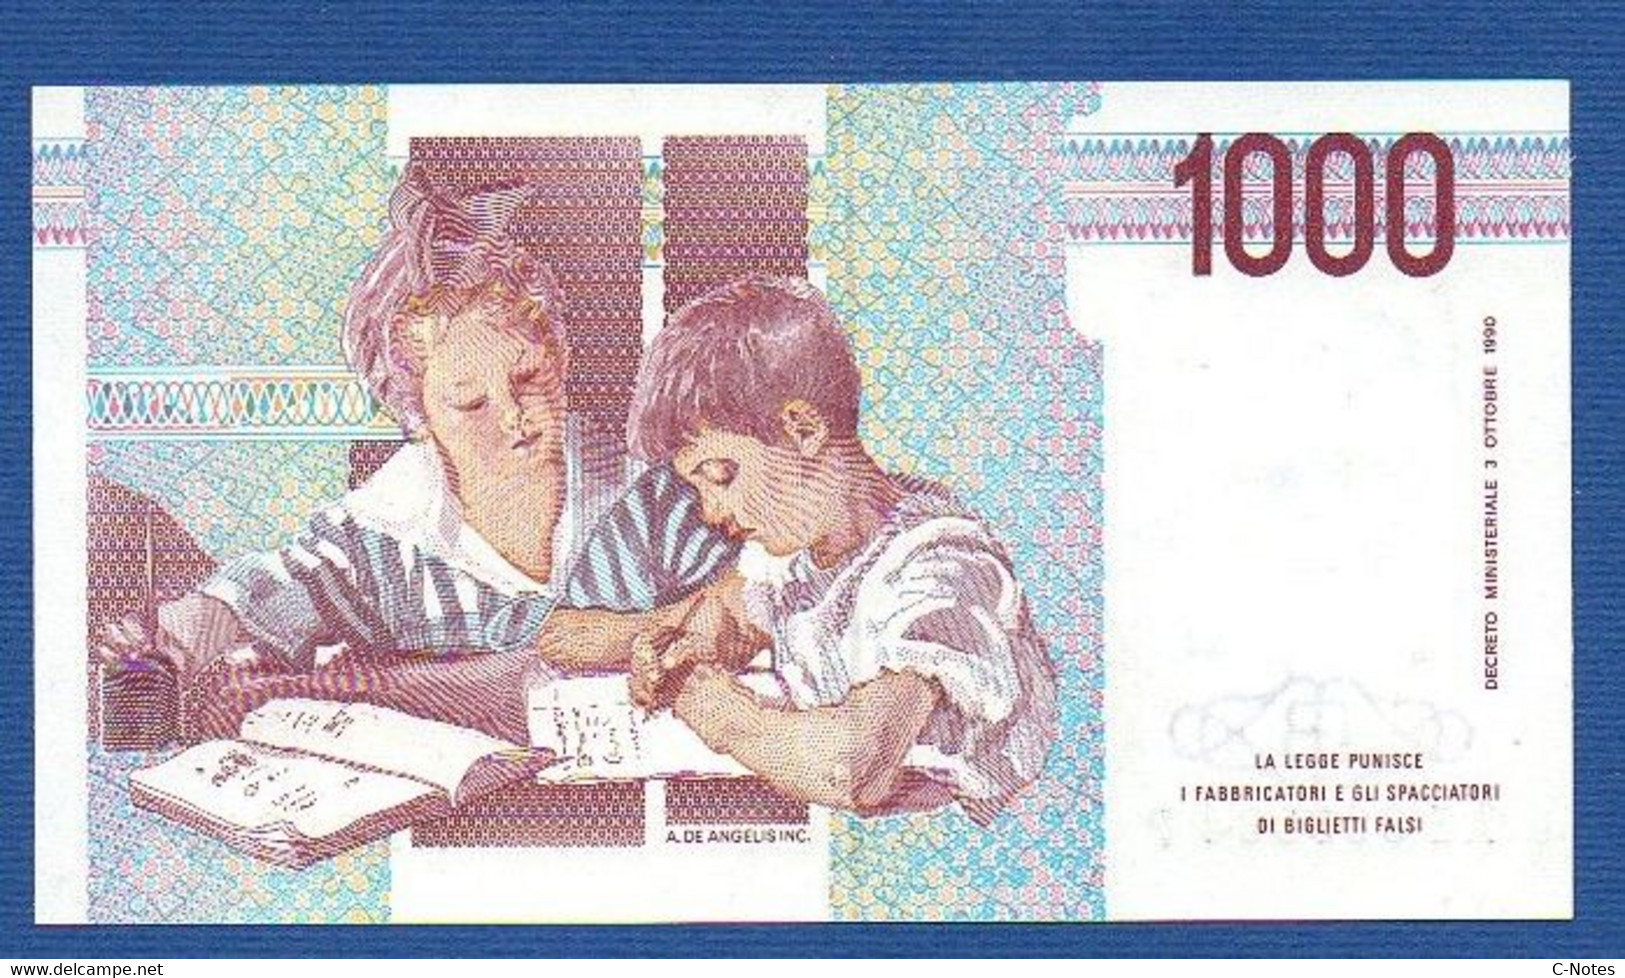 ITALY - P.114a – 1.000 LIRE M. Montessori 03.10.1990  UNC, Serie UC 071450 T - 1000 Lire